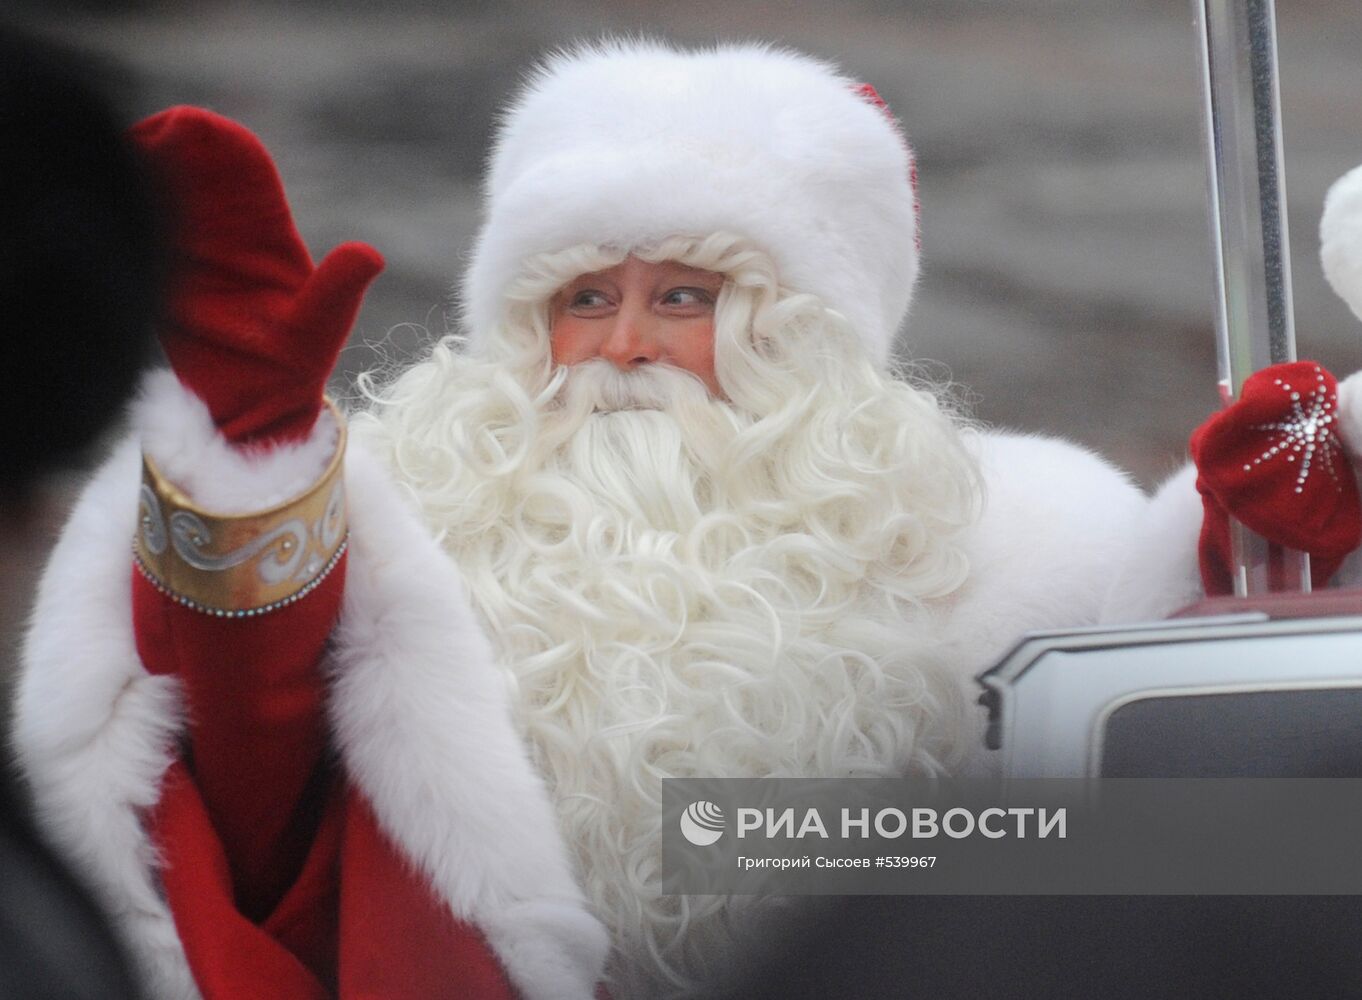 Дед Мороз прибыл из Великого Устюга на белом кабриолете